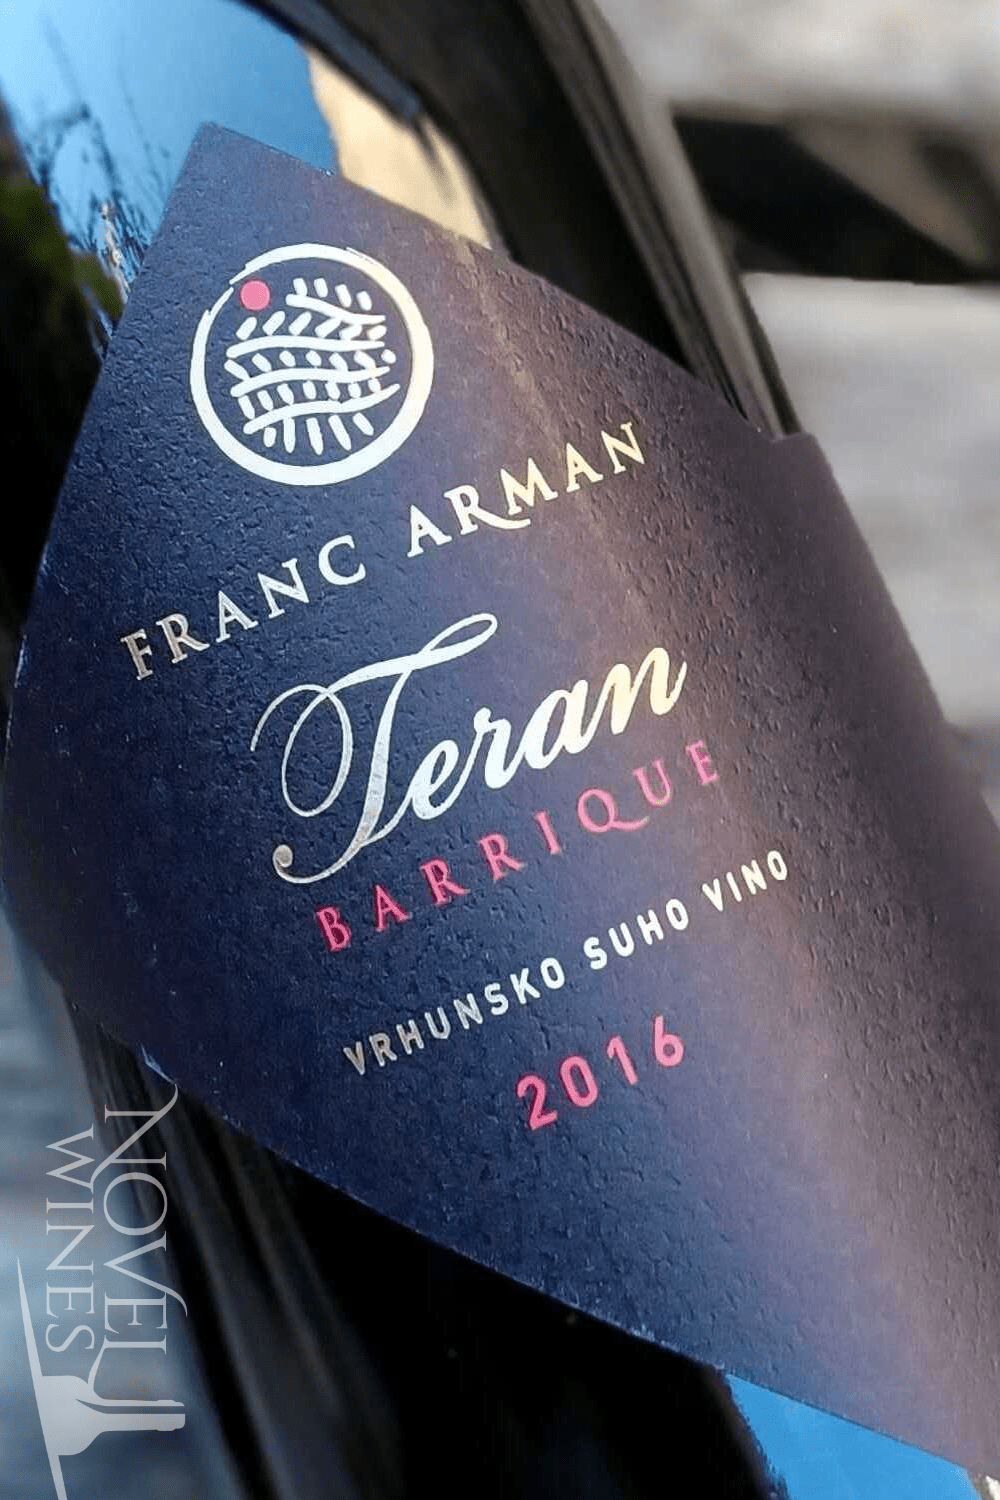 Franc Arman Red Wine Franc Arman Teran Barrique 2016, Croatia